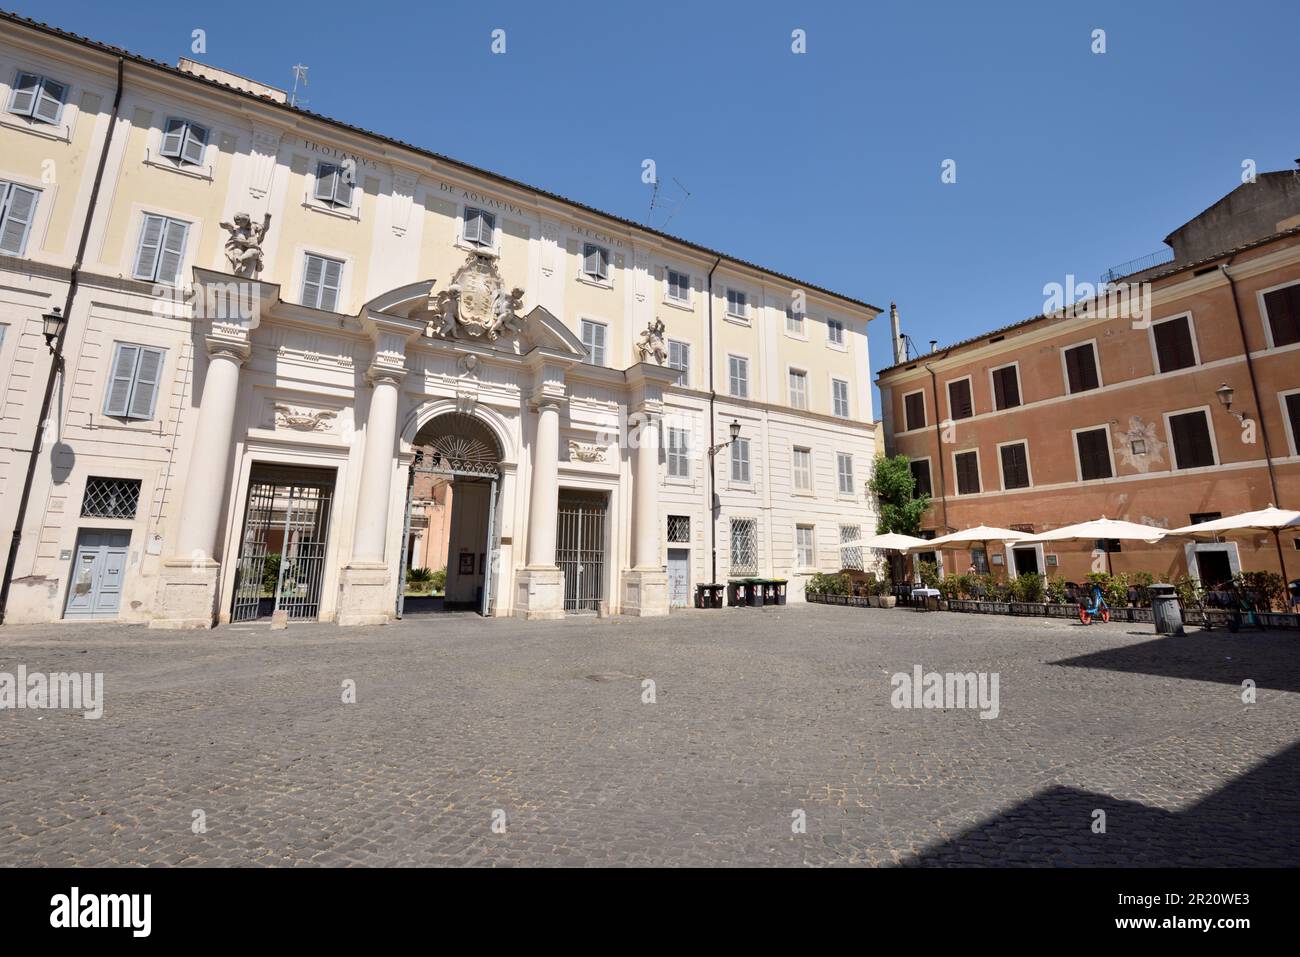 italy, rome, trastevere, piazza di santa cecilia, complex of santa cecilia in trastevere, convent monumental entrance Stock Photo